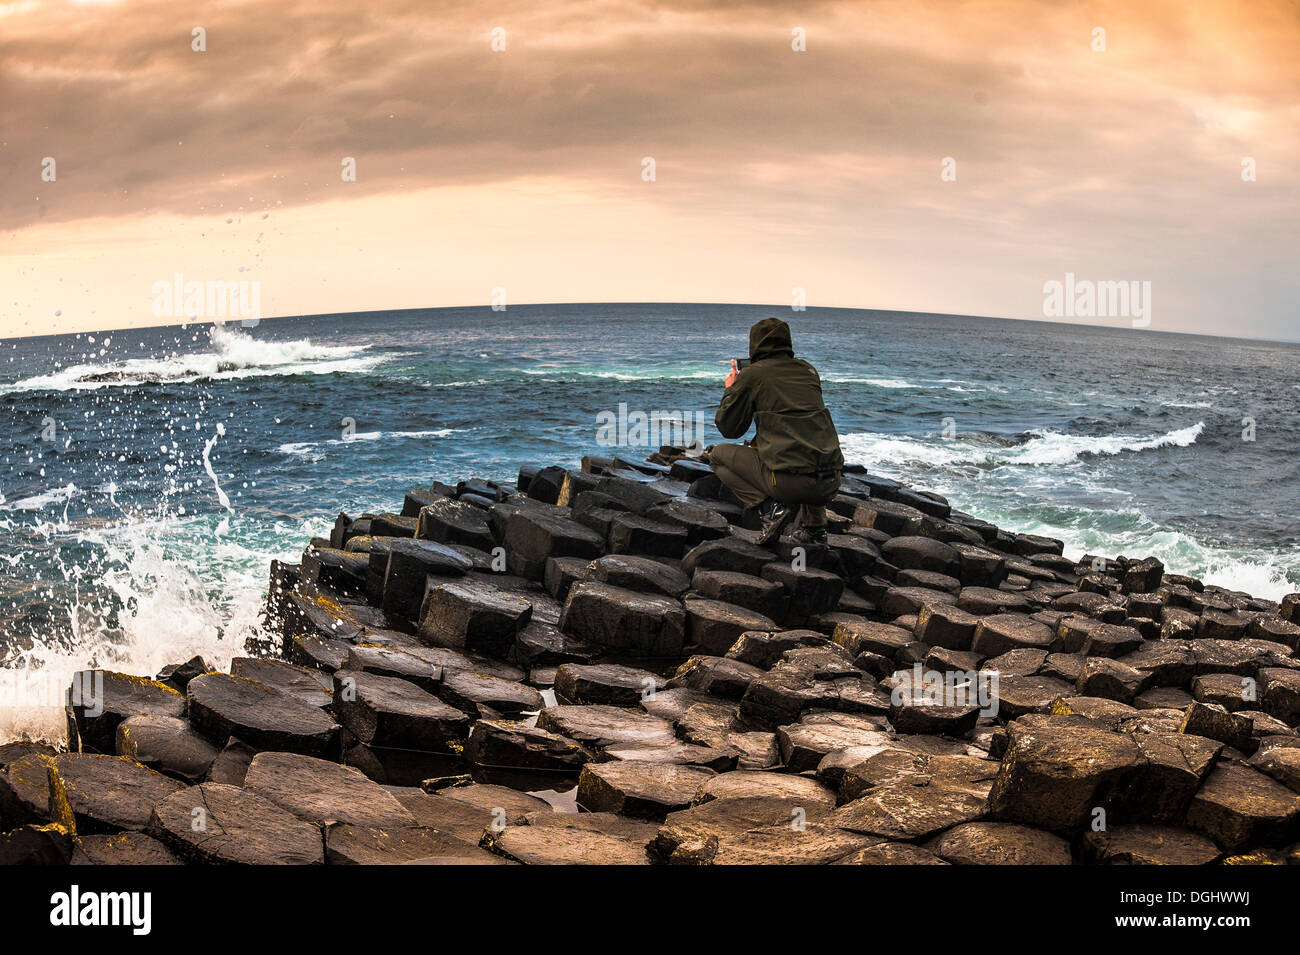 L'homme de prendre des photos avec un smartphone, Giant's Causeway, colonnes de basalte, côte de Causeway, comté d'Antrim, en Irlande du Nord Banque D'Images